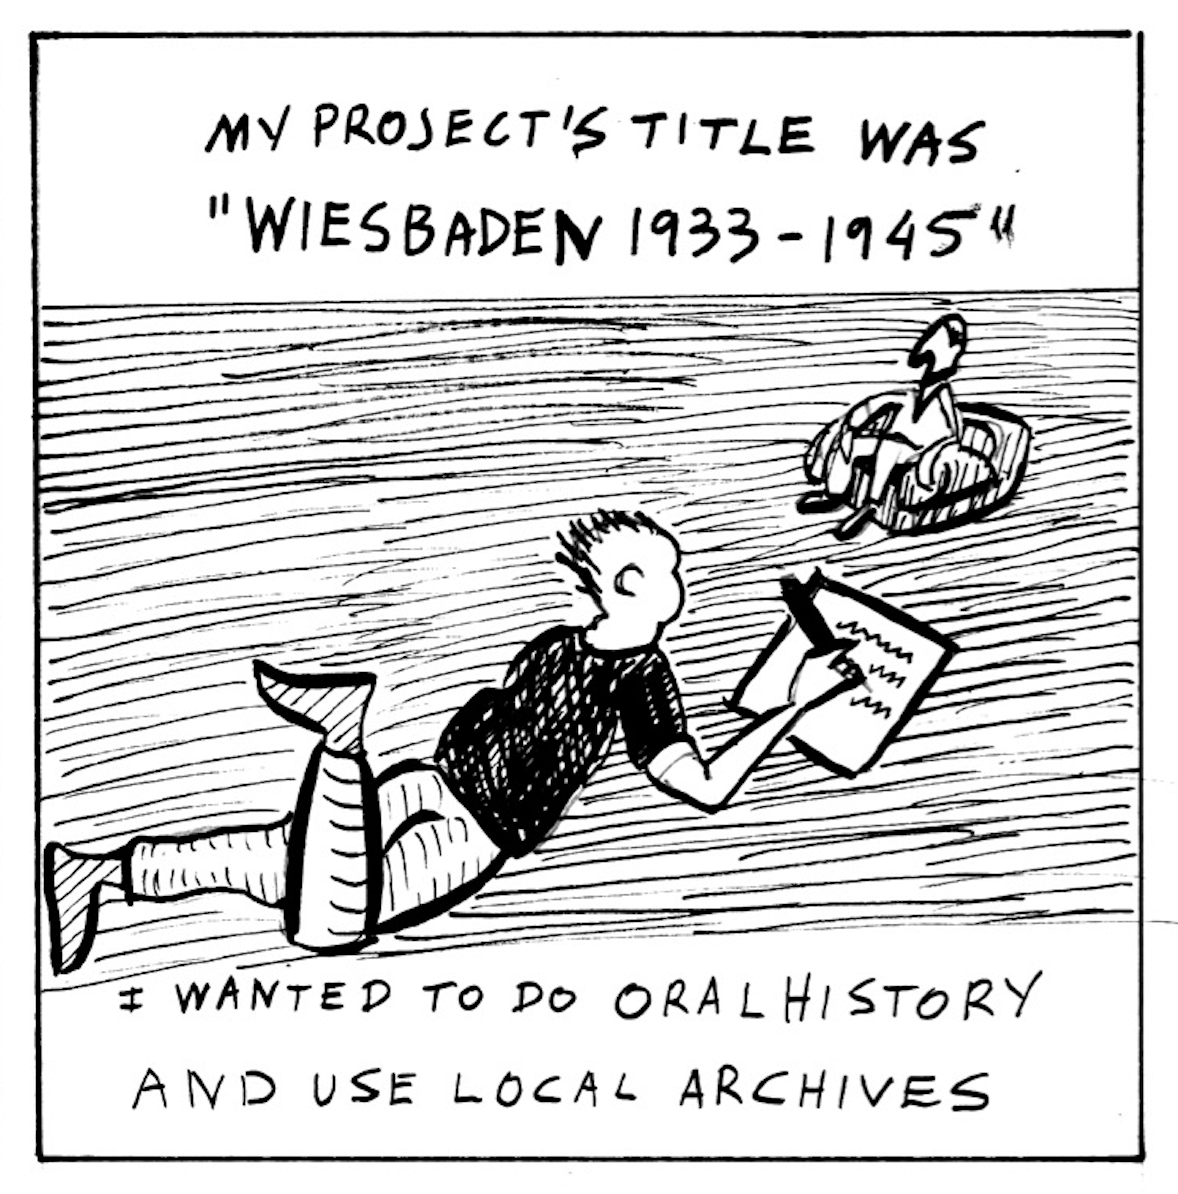 â€œMy projectâ€™s title was â€˜Wiesbaden 1933-1945.â€ I wanted to do oral history and use local archives.â€